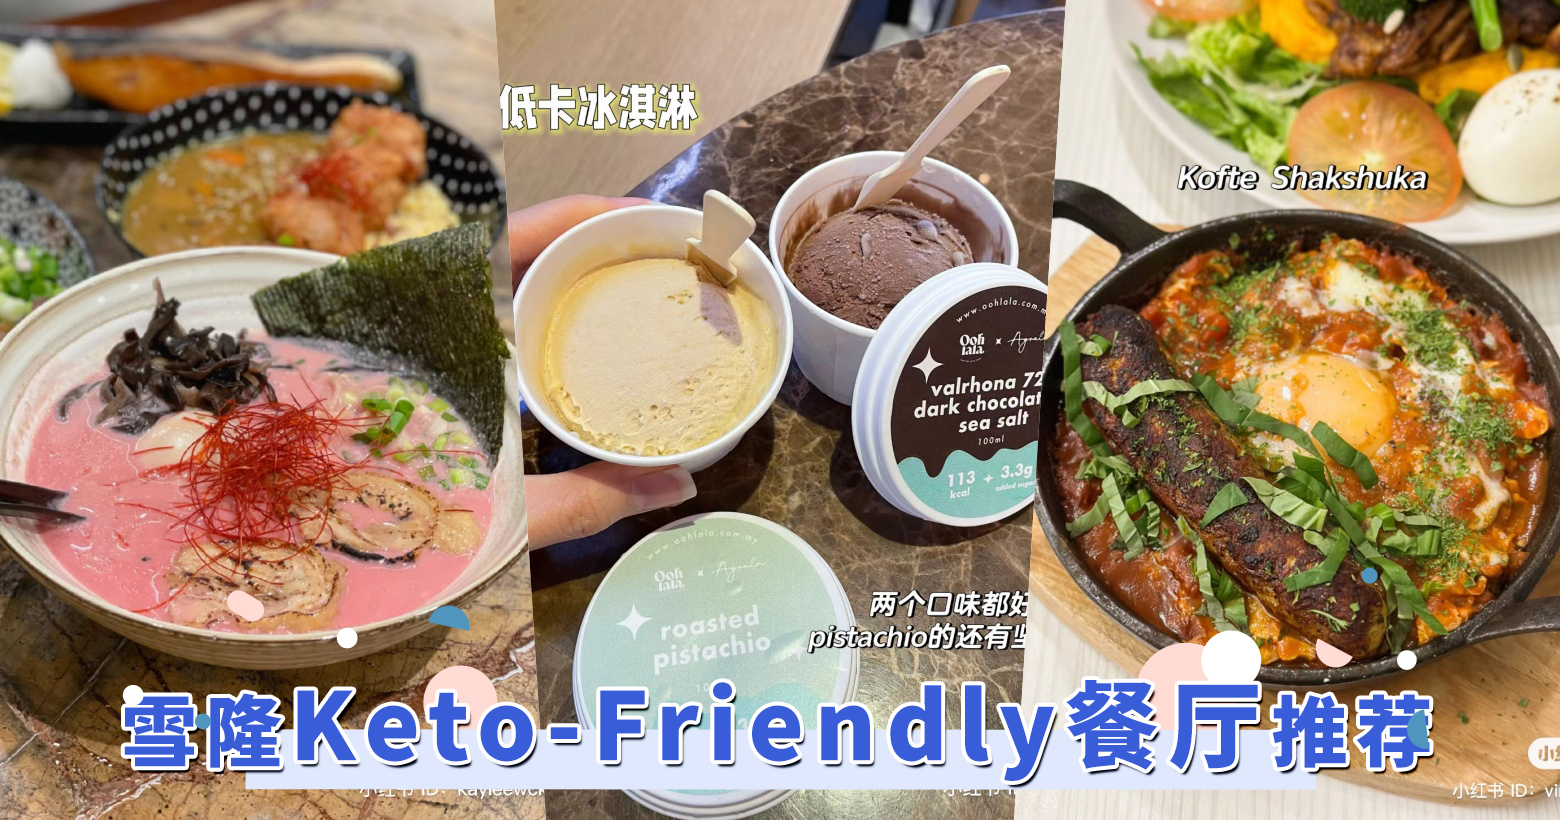 雪隆区6间「Keto-Friendly」餐厅推荐：不仅有多种甜品、花椰菜饭选择，减重甚至连拉面也能吃！